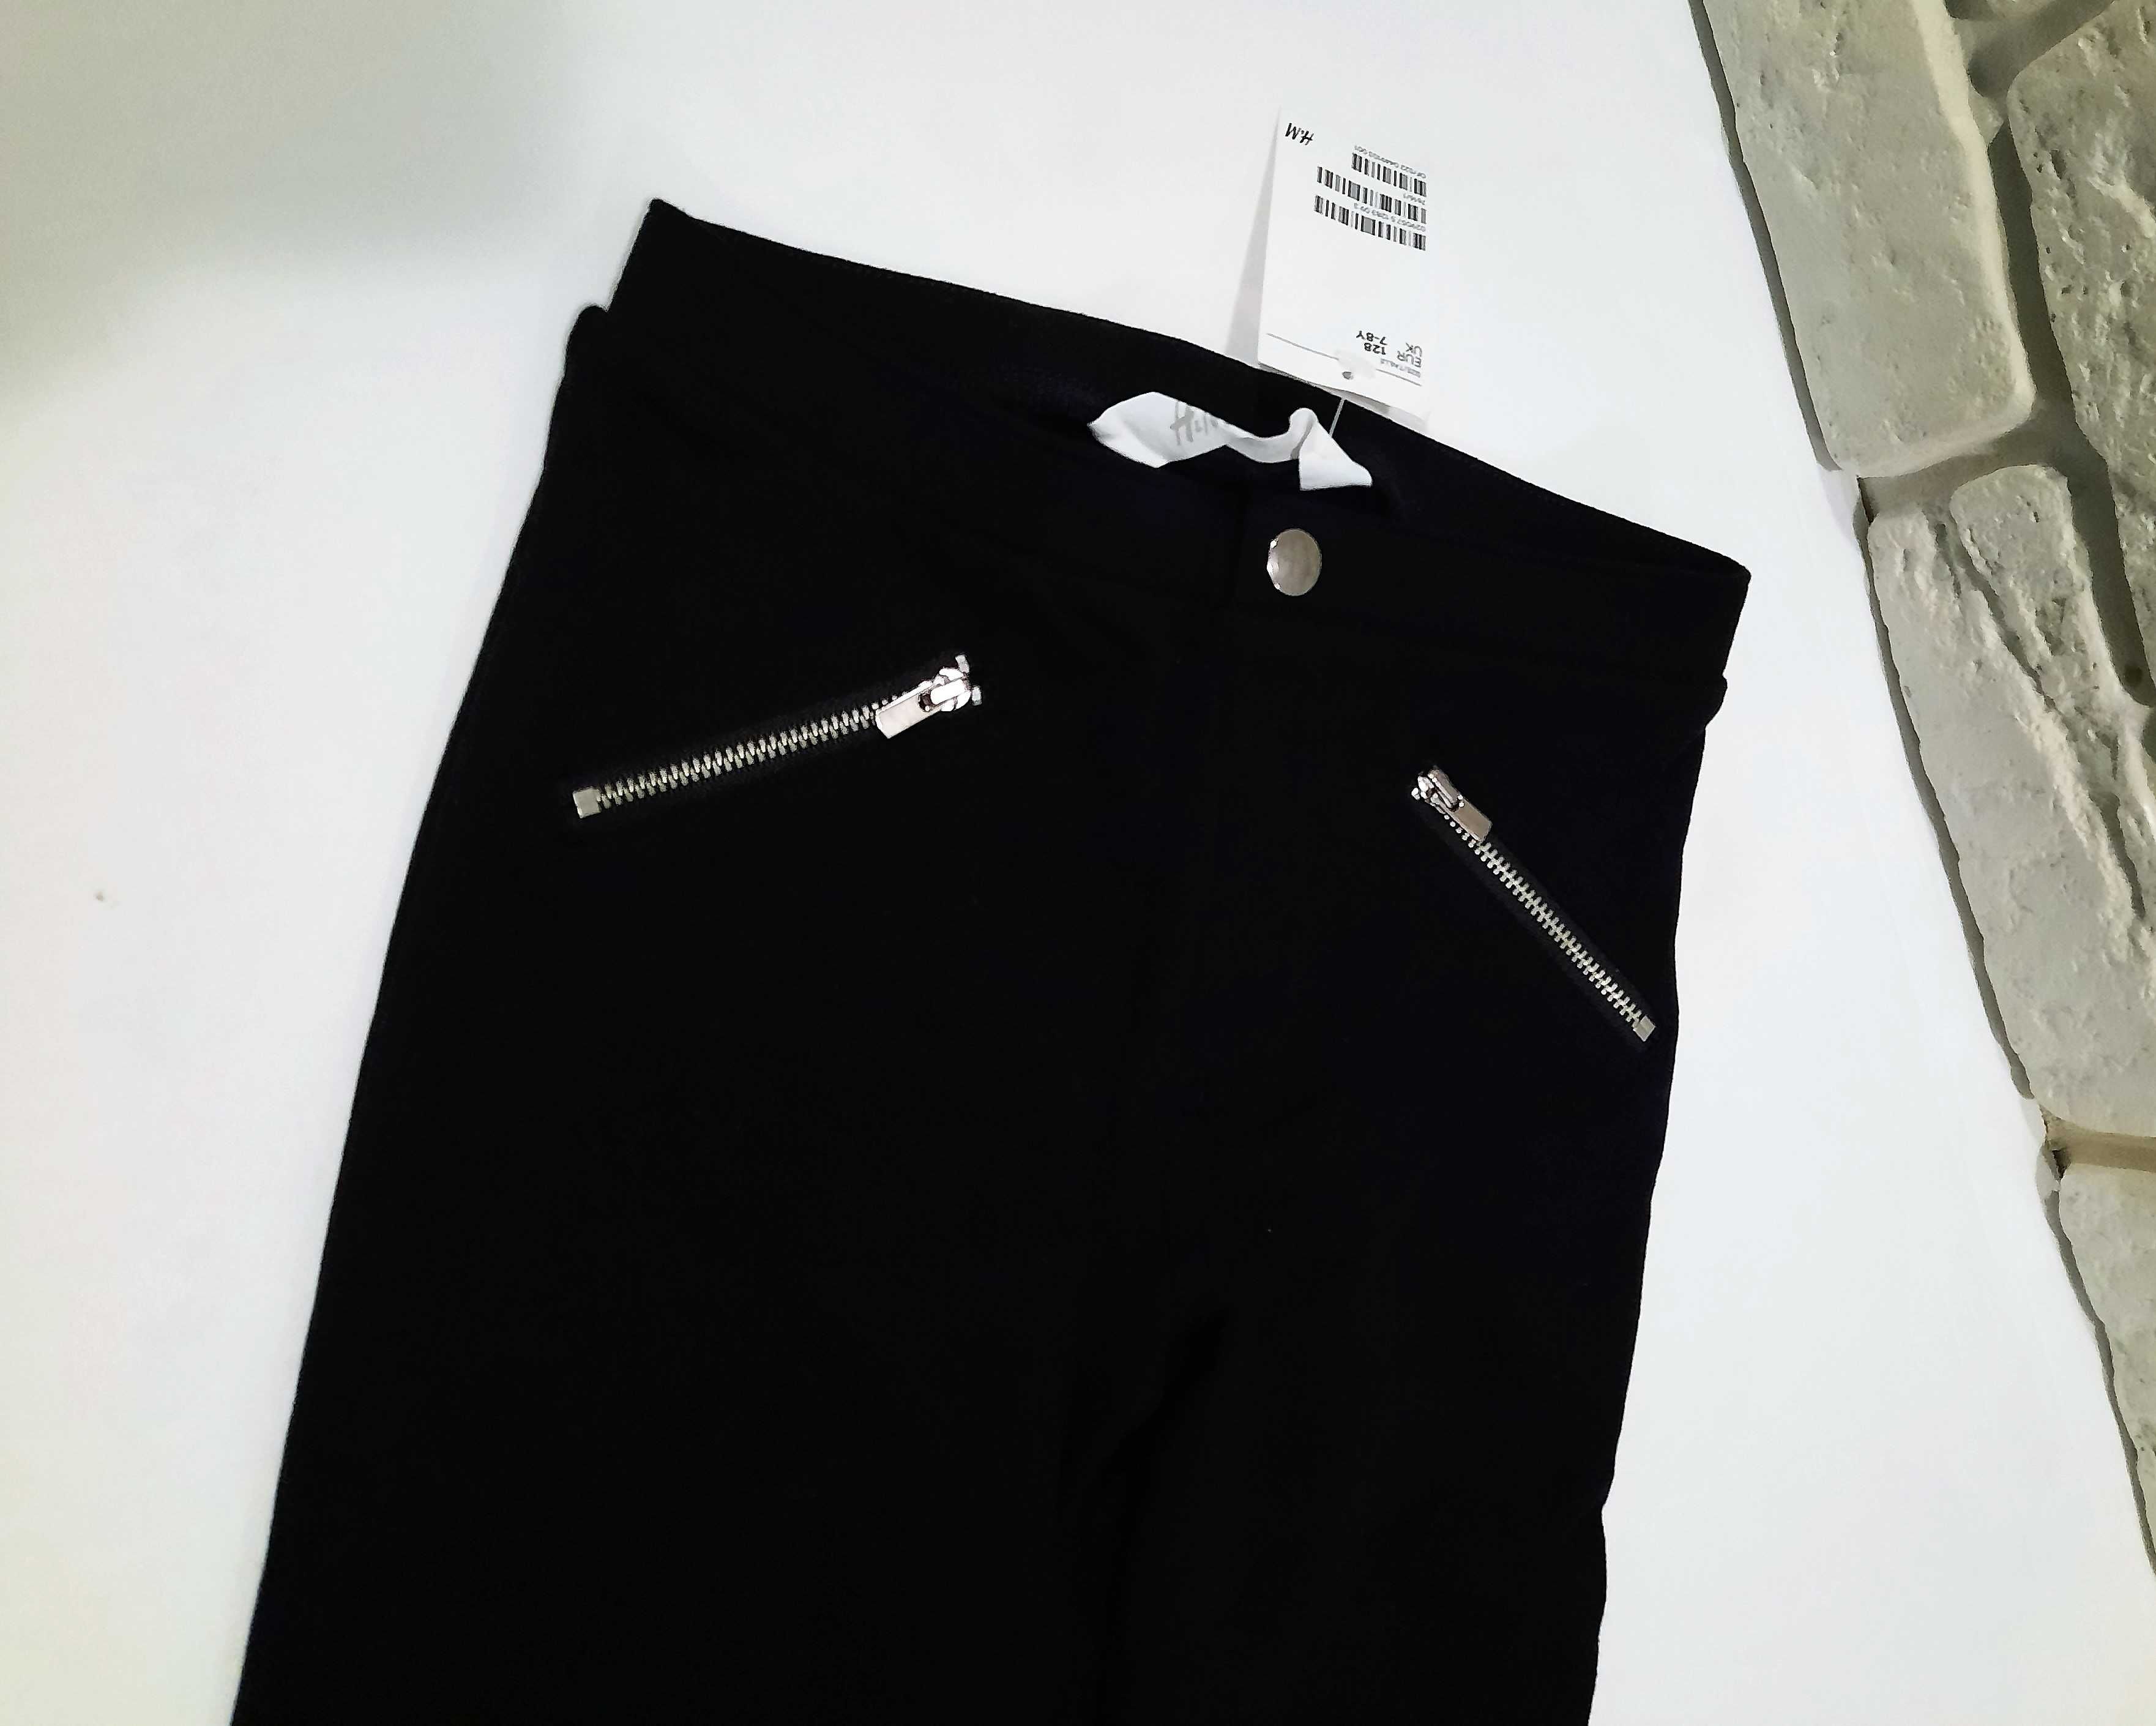 Tregginsy czarne spodnie legginsy getry H&M roz 128 ala skóra